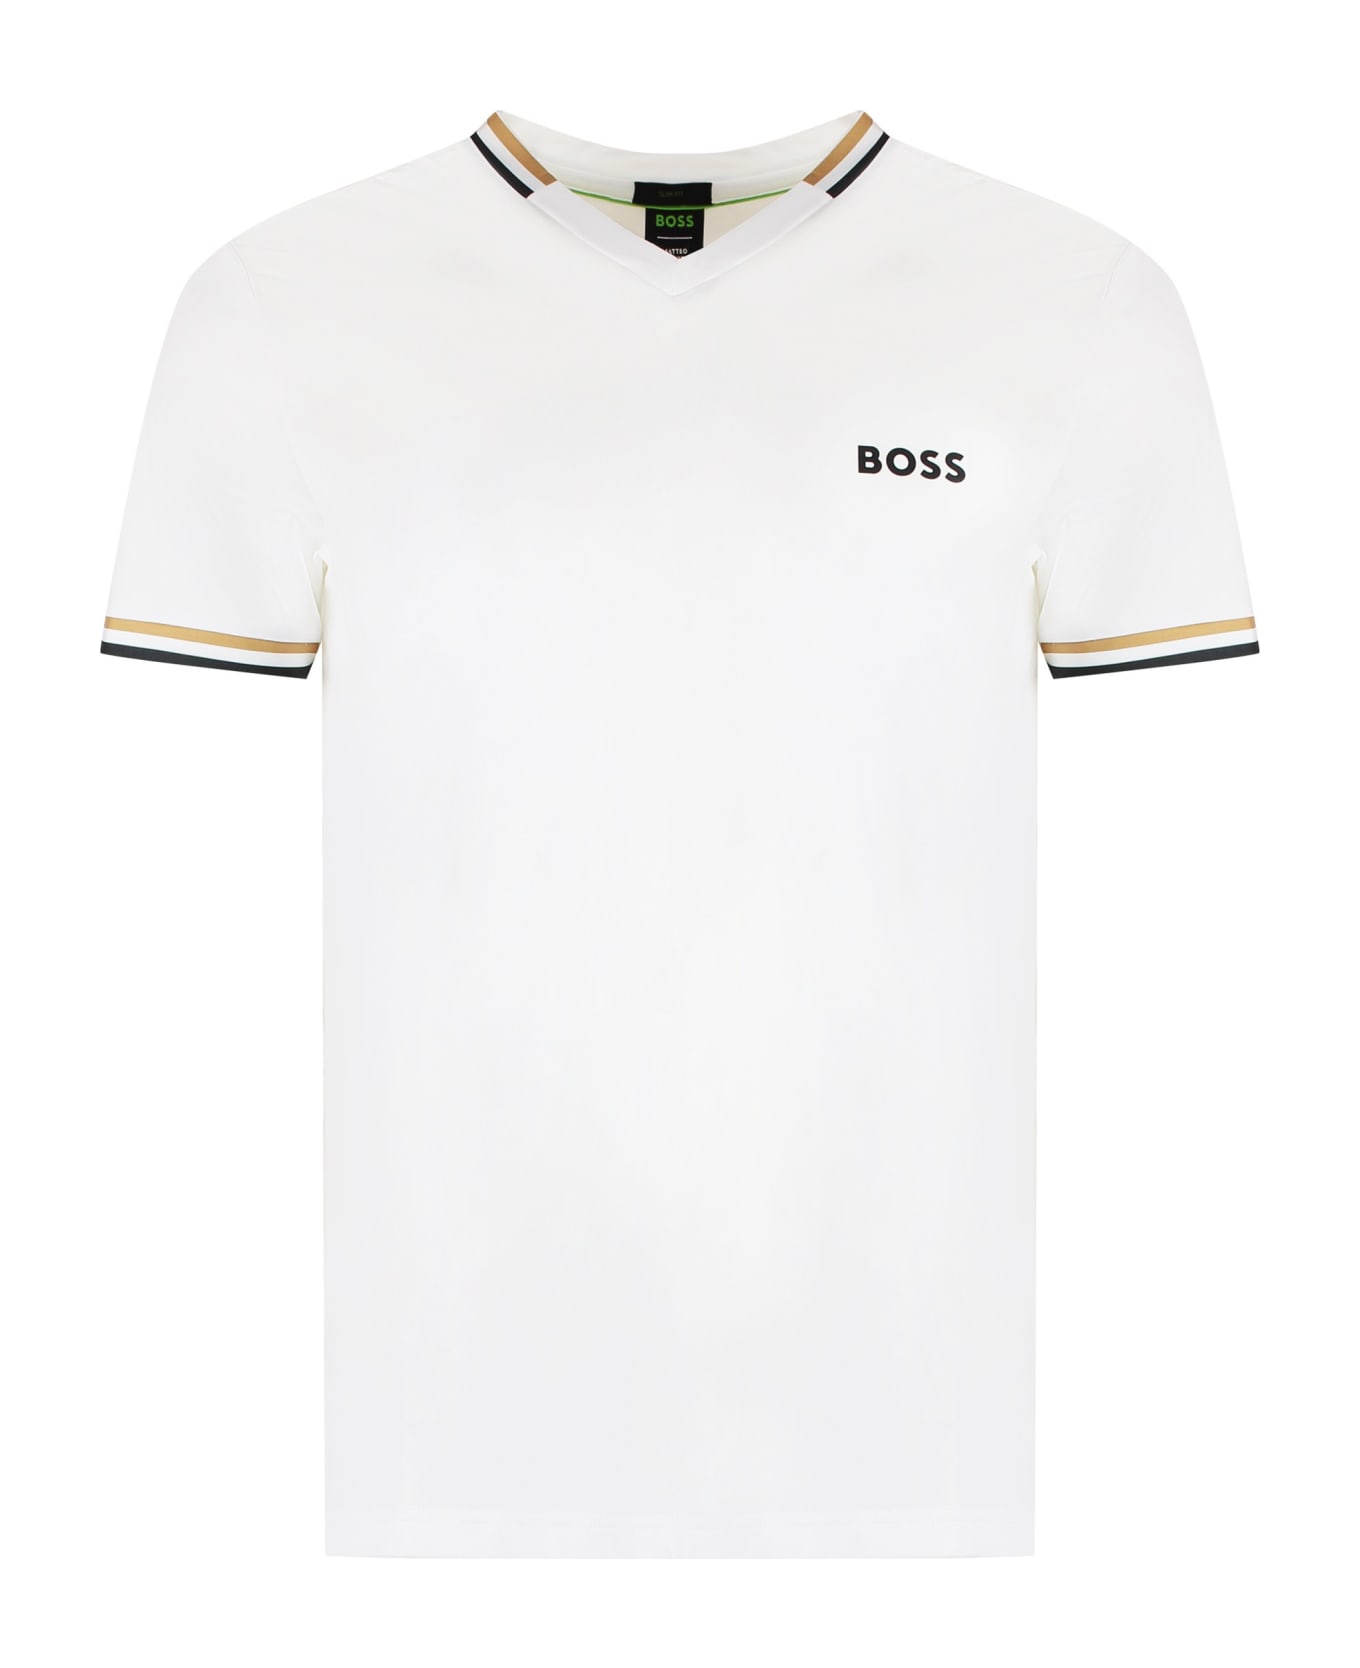 Hugo Boss Boss X Matteo Berrettini - Techno Fabric T-shirt - White